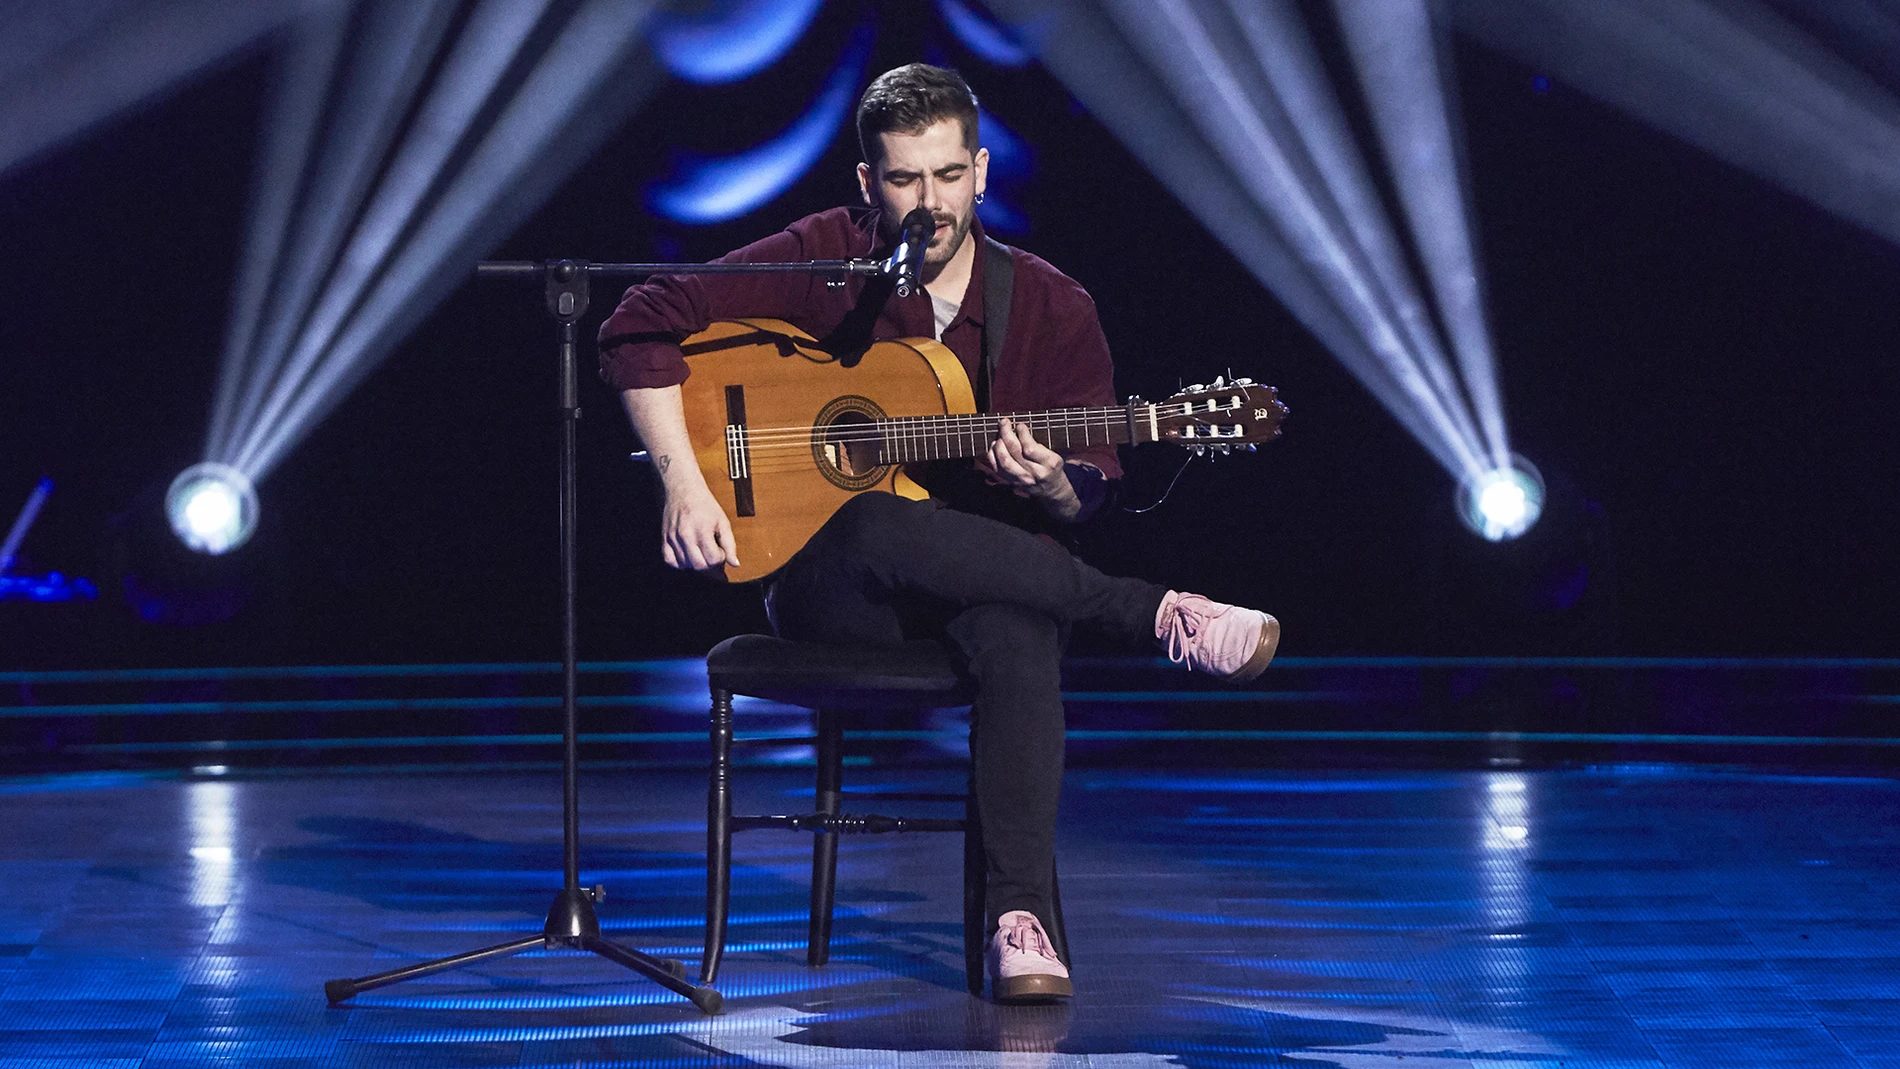 Miguelichi López emociona con ‘Lágrimas Negras’ en las Audiciones a ciegas de ‘La Voz’